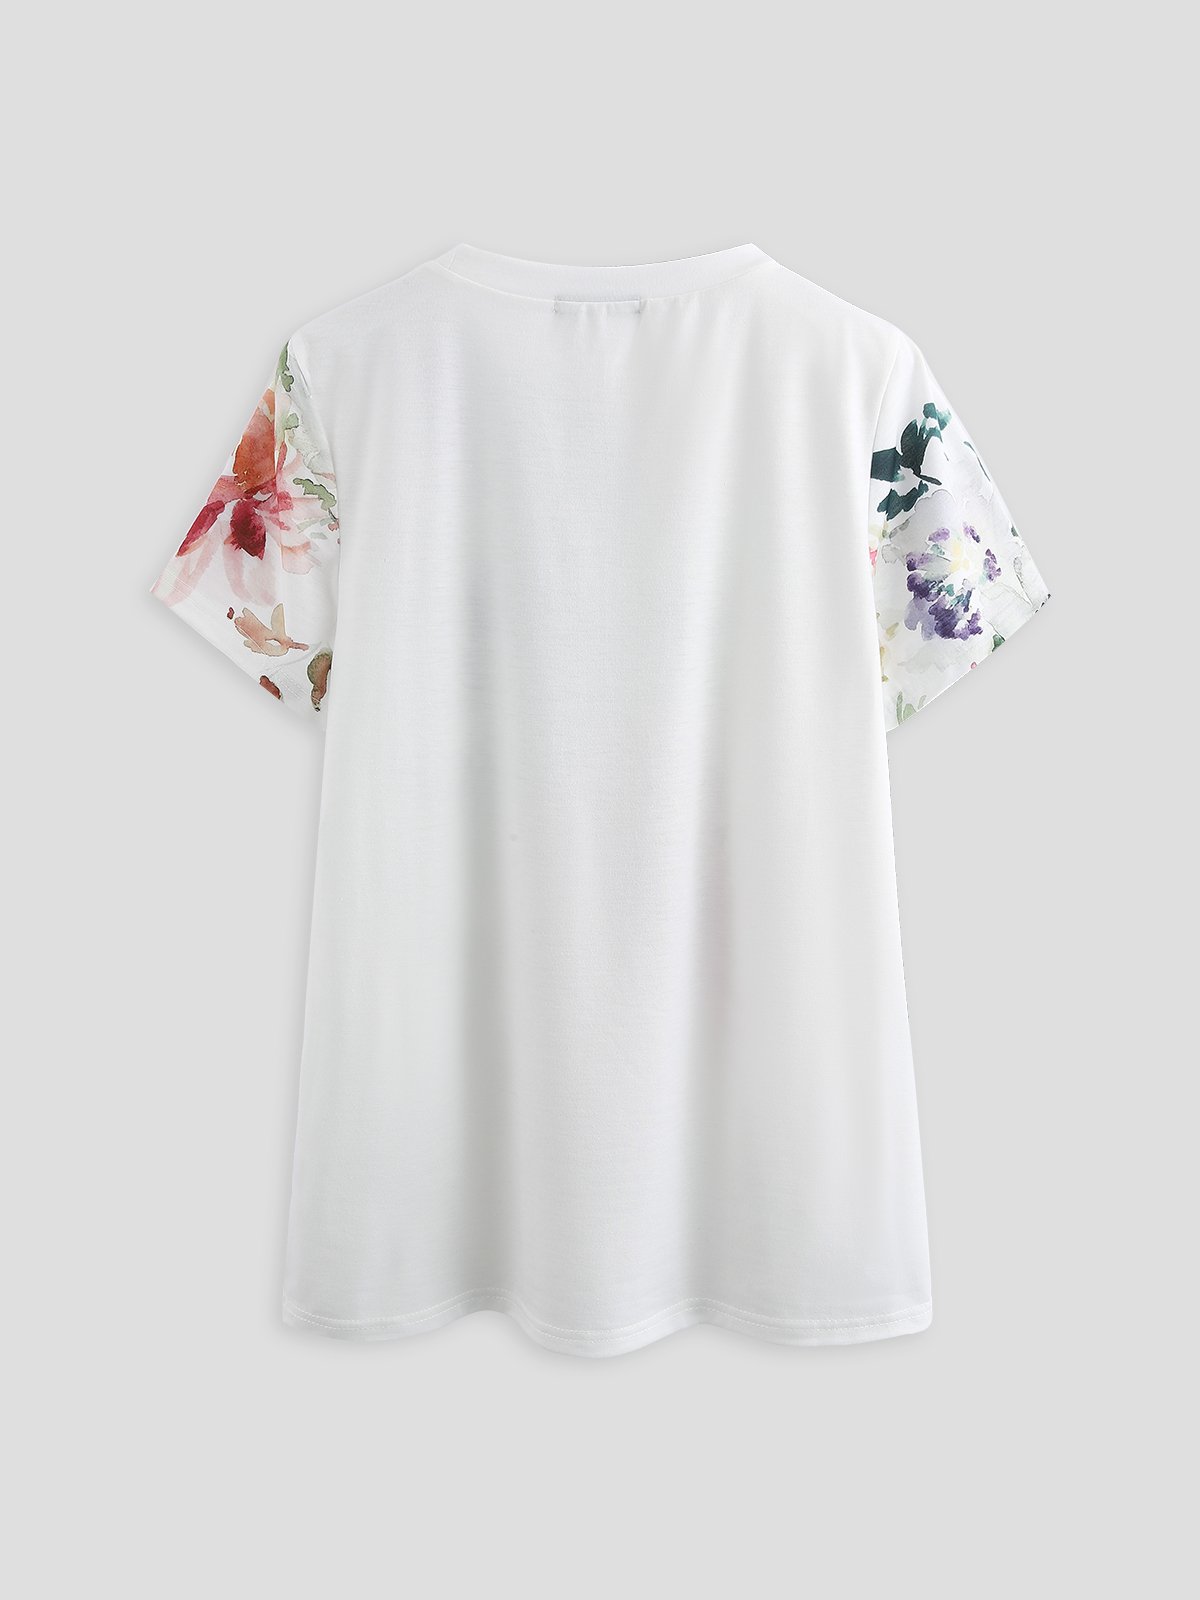 della mamma Giorno a tema Stampa - floreale Primavera nuovo piccante Donna T-shirt